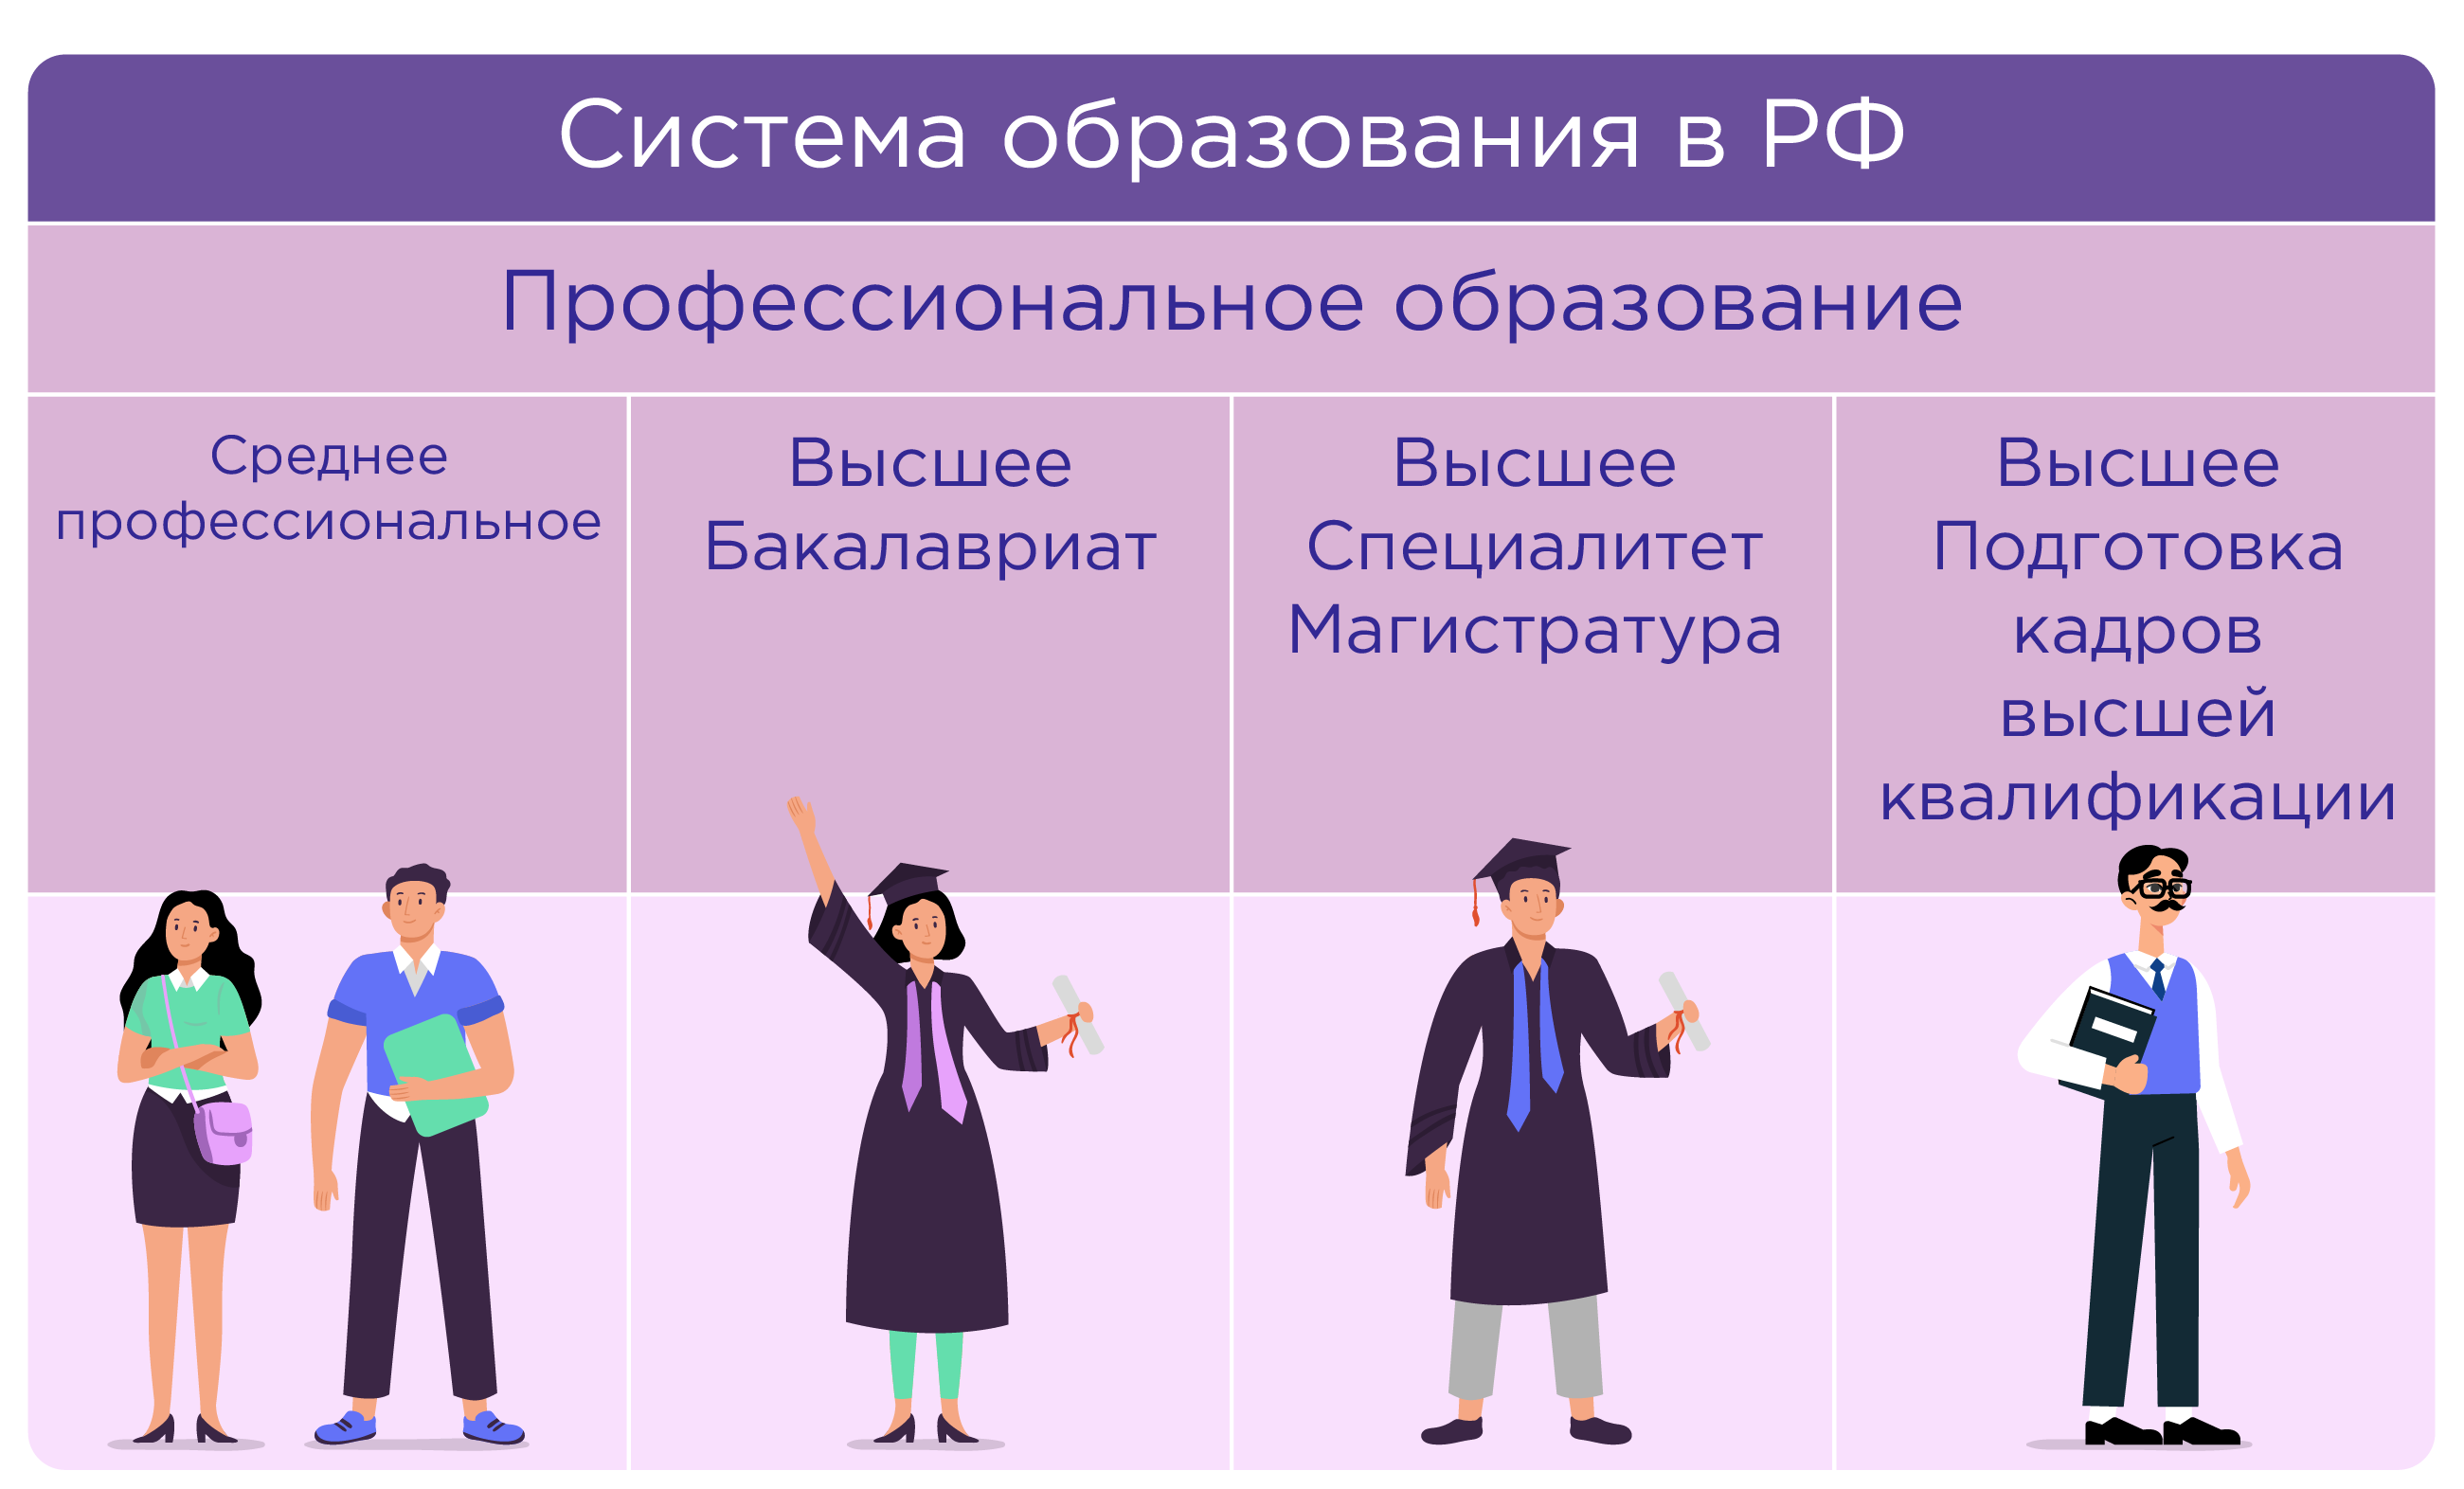 Рис. 2. Система образования в РФ. Профессиональное образование